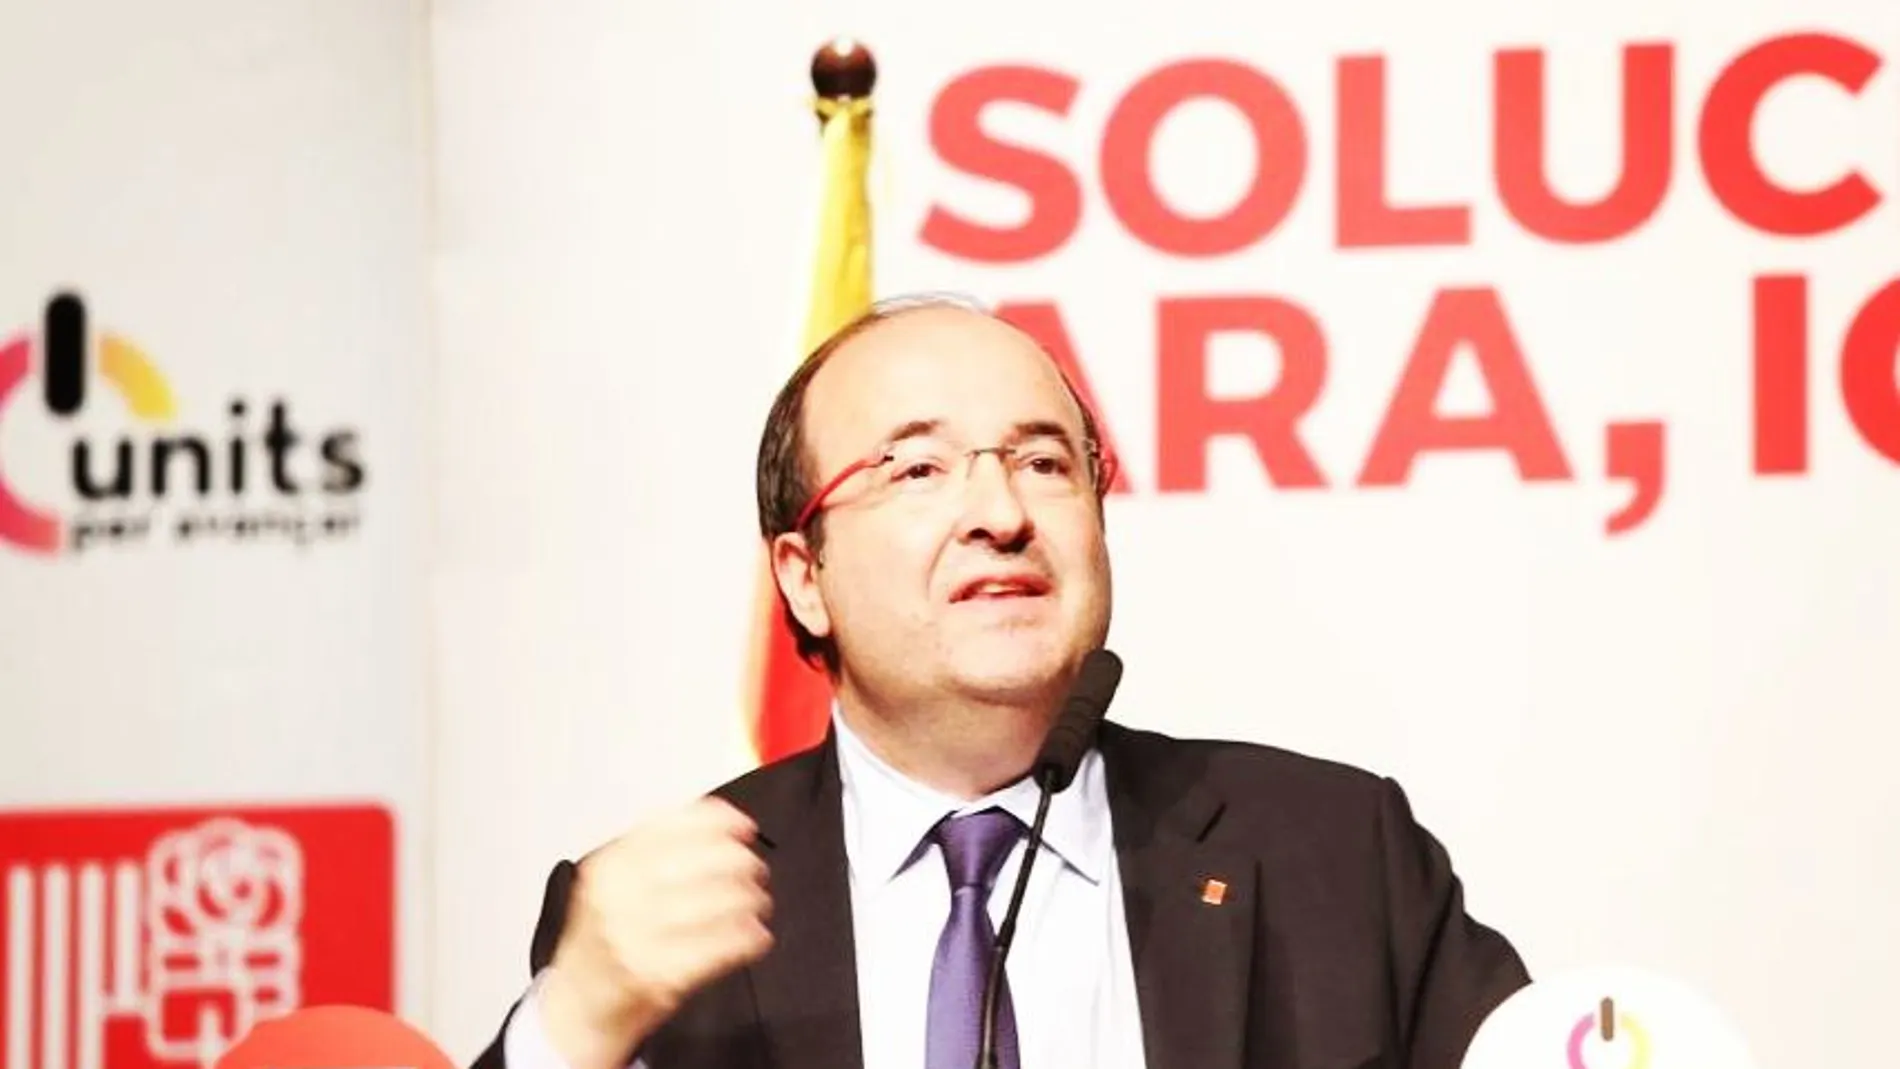 El candidato del PSC a las elecciones catalanas del 21D, Miquel Iceta